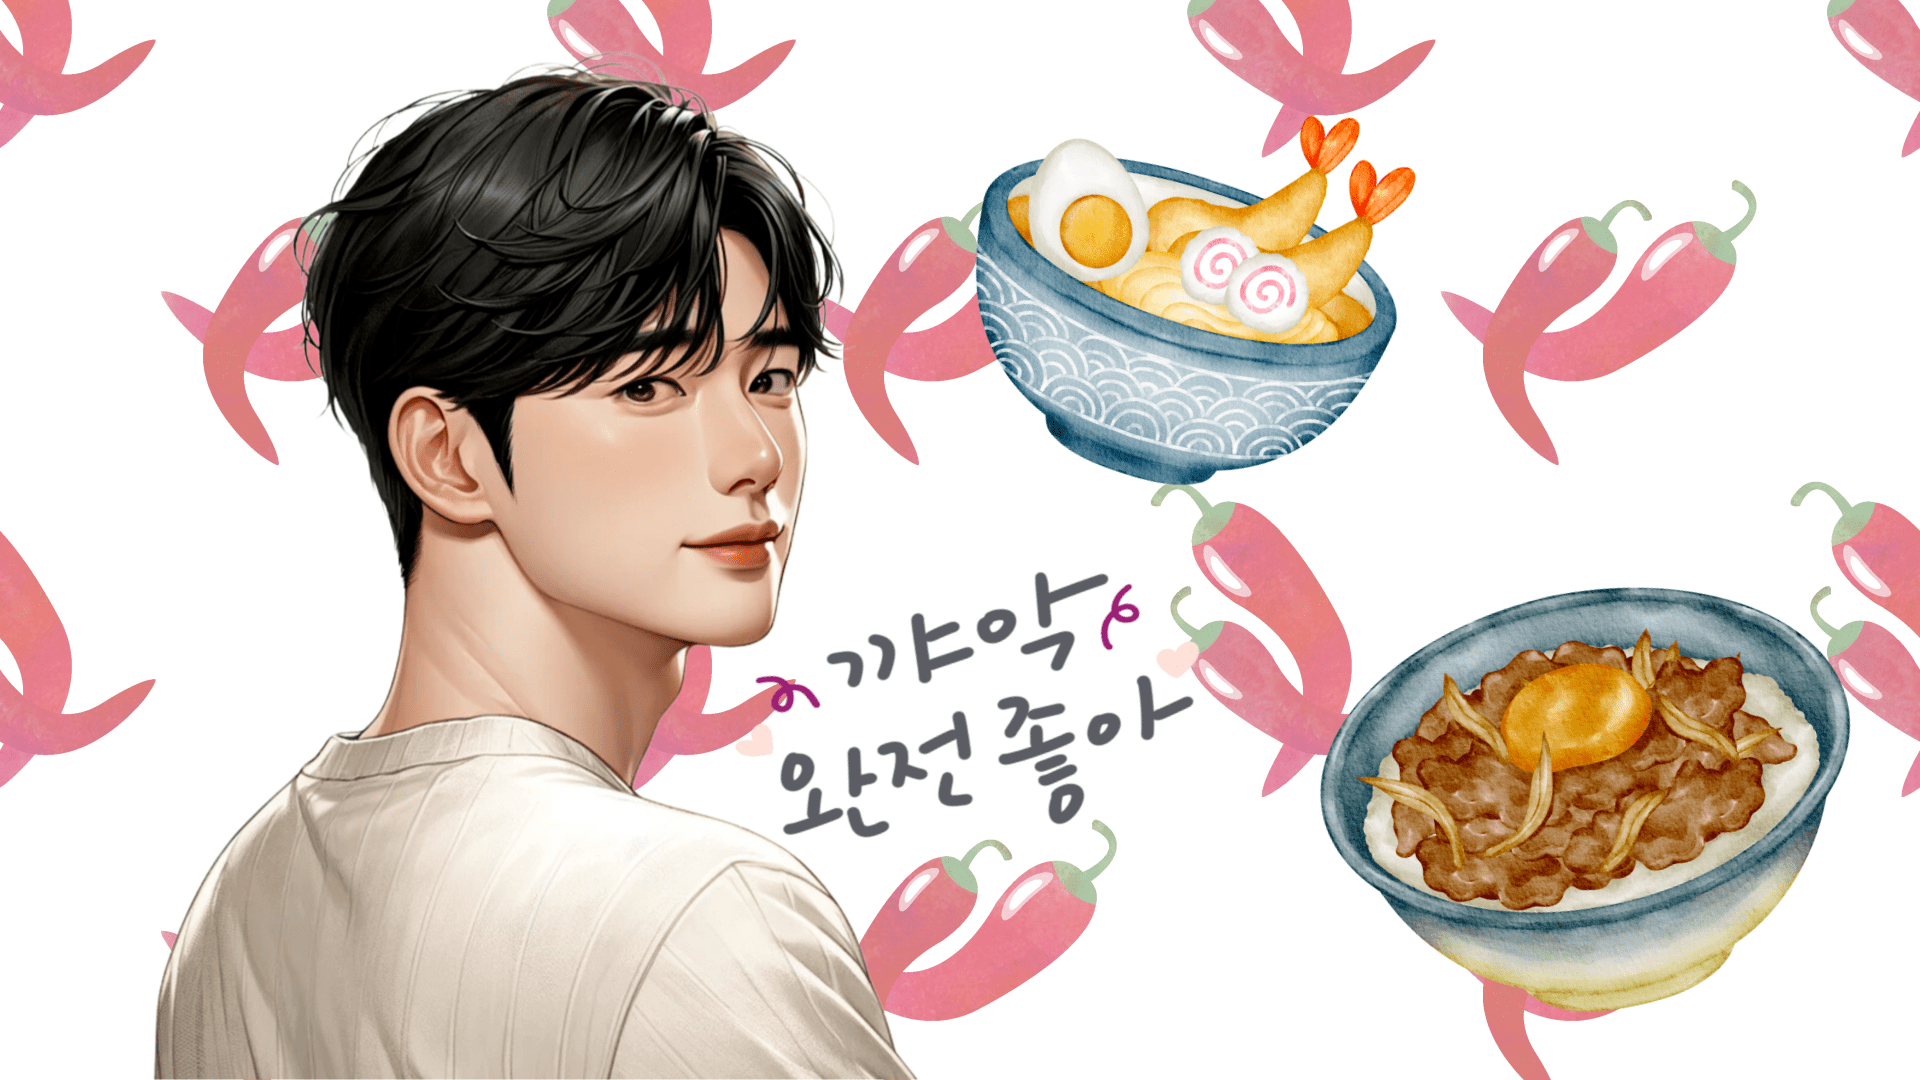 【日韓夫婦ライターが語る】韓国人男性を満足させる料理の秘訣